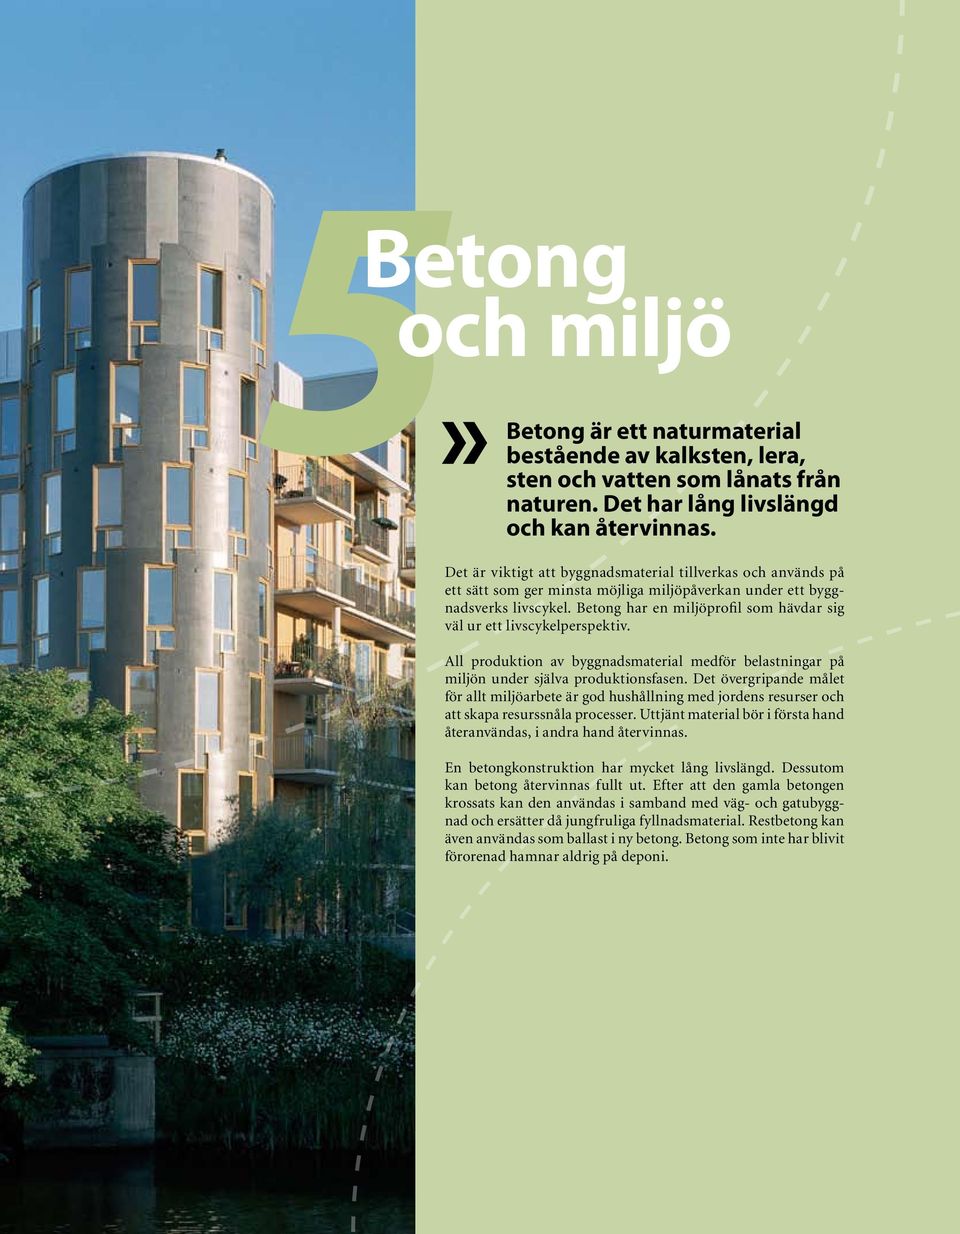 Betong har en miljöprofil som hävdar sig väl ur ett livscykelperspektiv. All produktion av byggnadsmaterial medför belastningar på miljön under själva produktionsfasen.